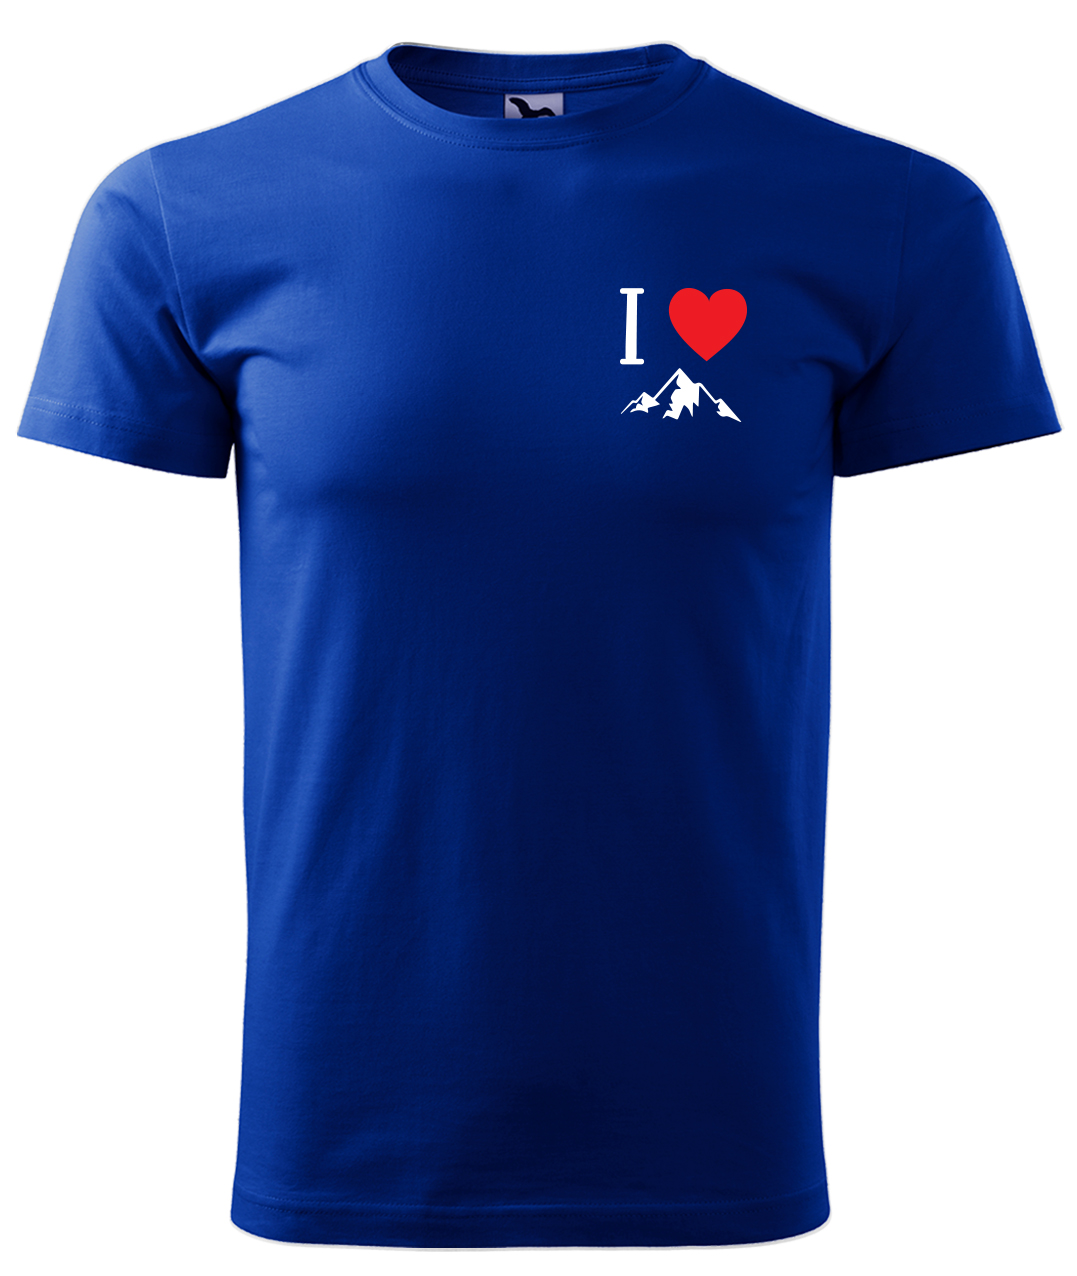 Dětské tričko na hory - I love mountain Velikost: 4 roky / 110 cm, Barva: Královská modrá (05), Délka rukávu: Krátký rukáv